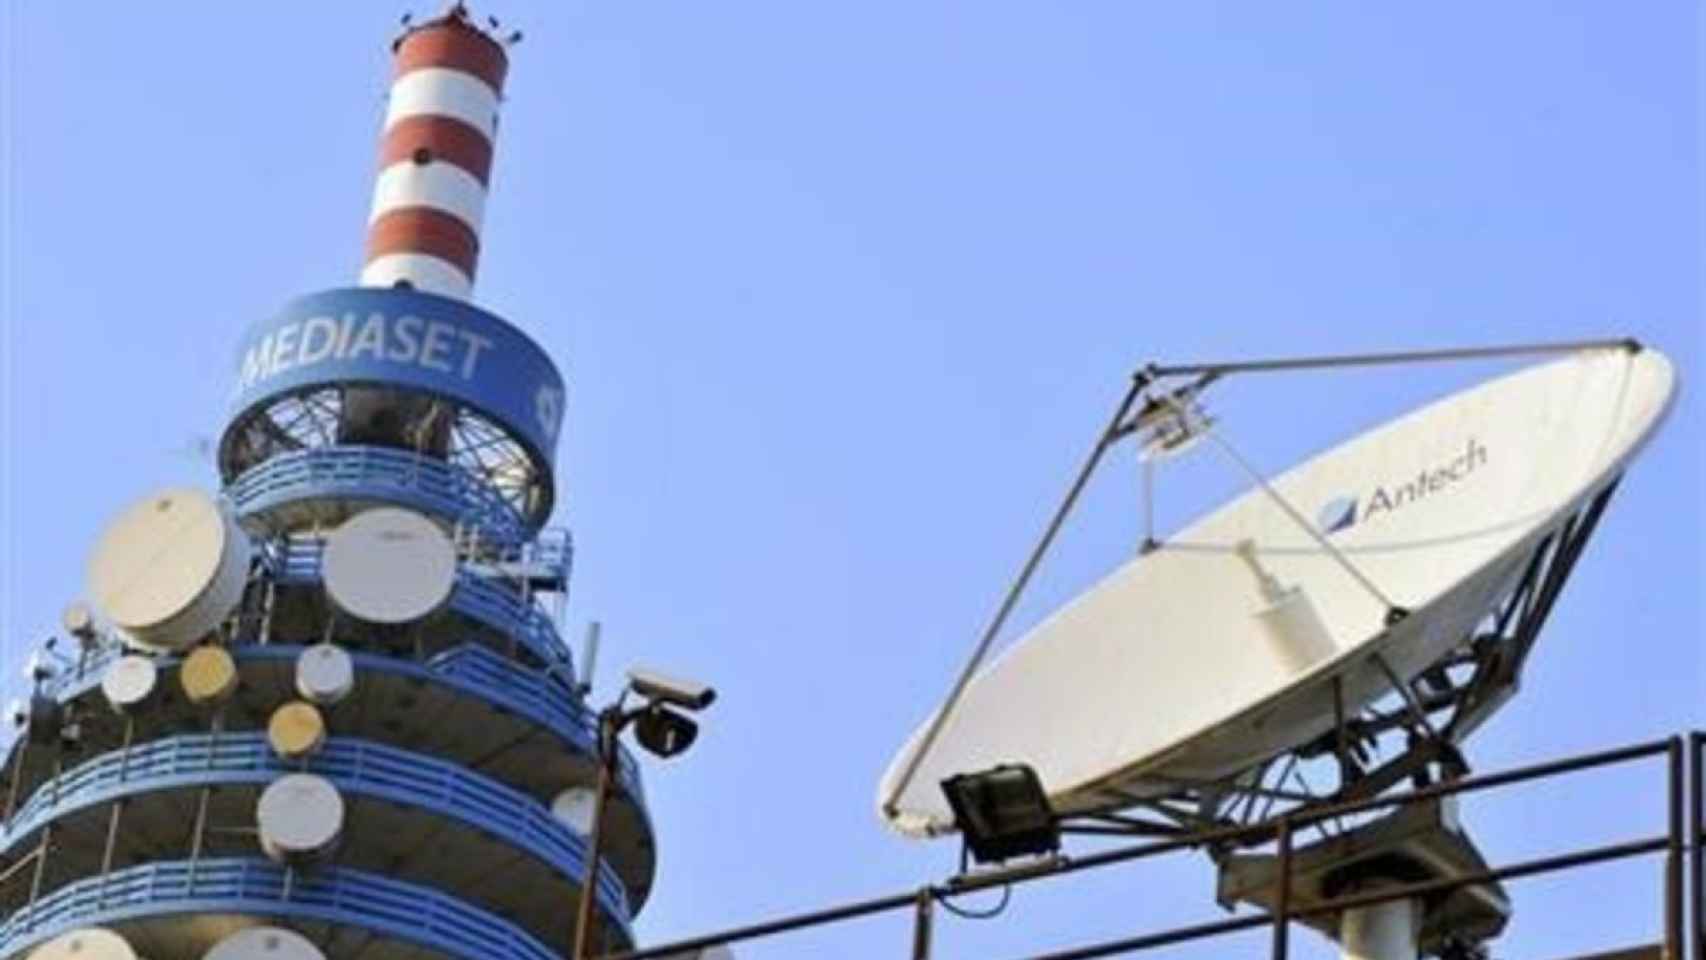 Antenas en la sede central del grupo Mediaset en Italia.